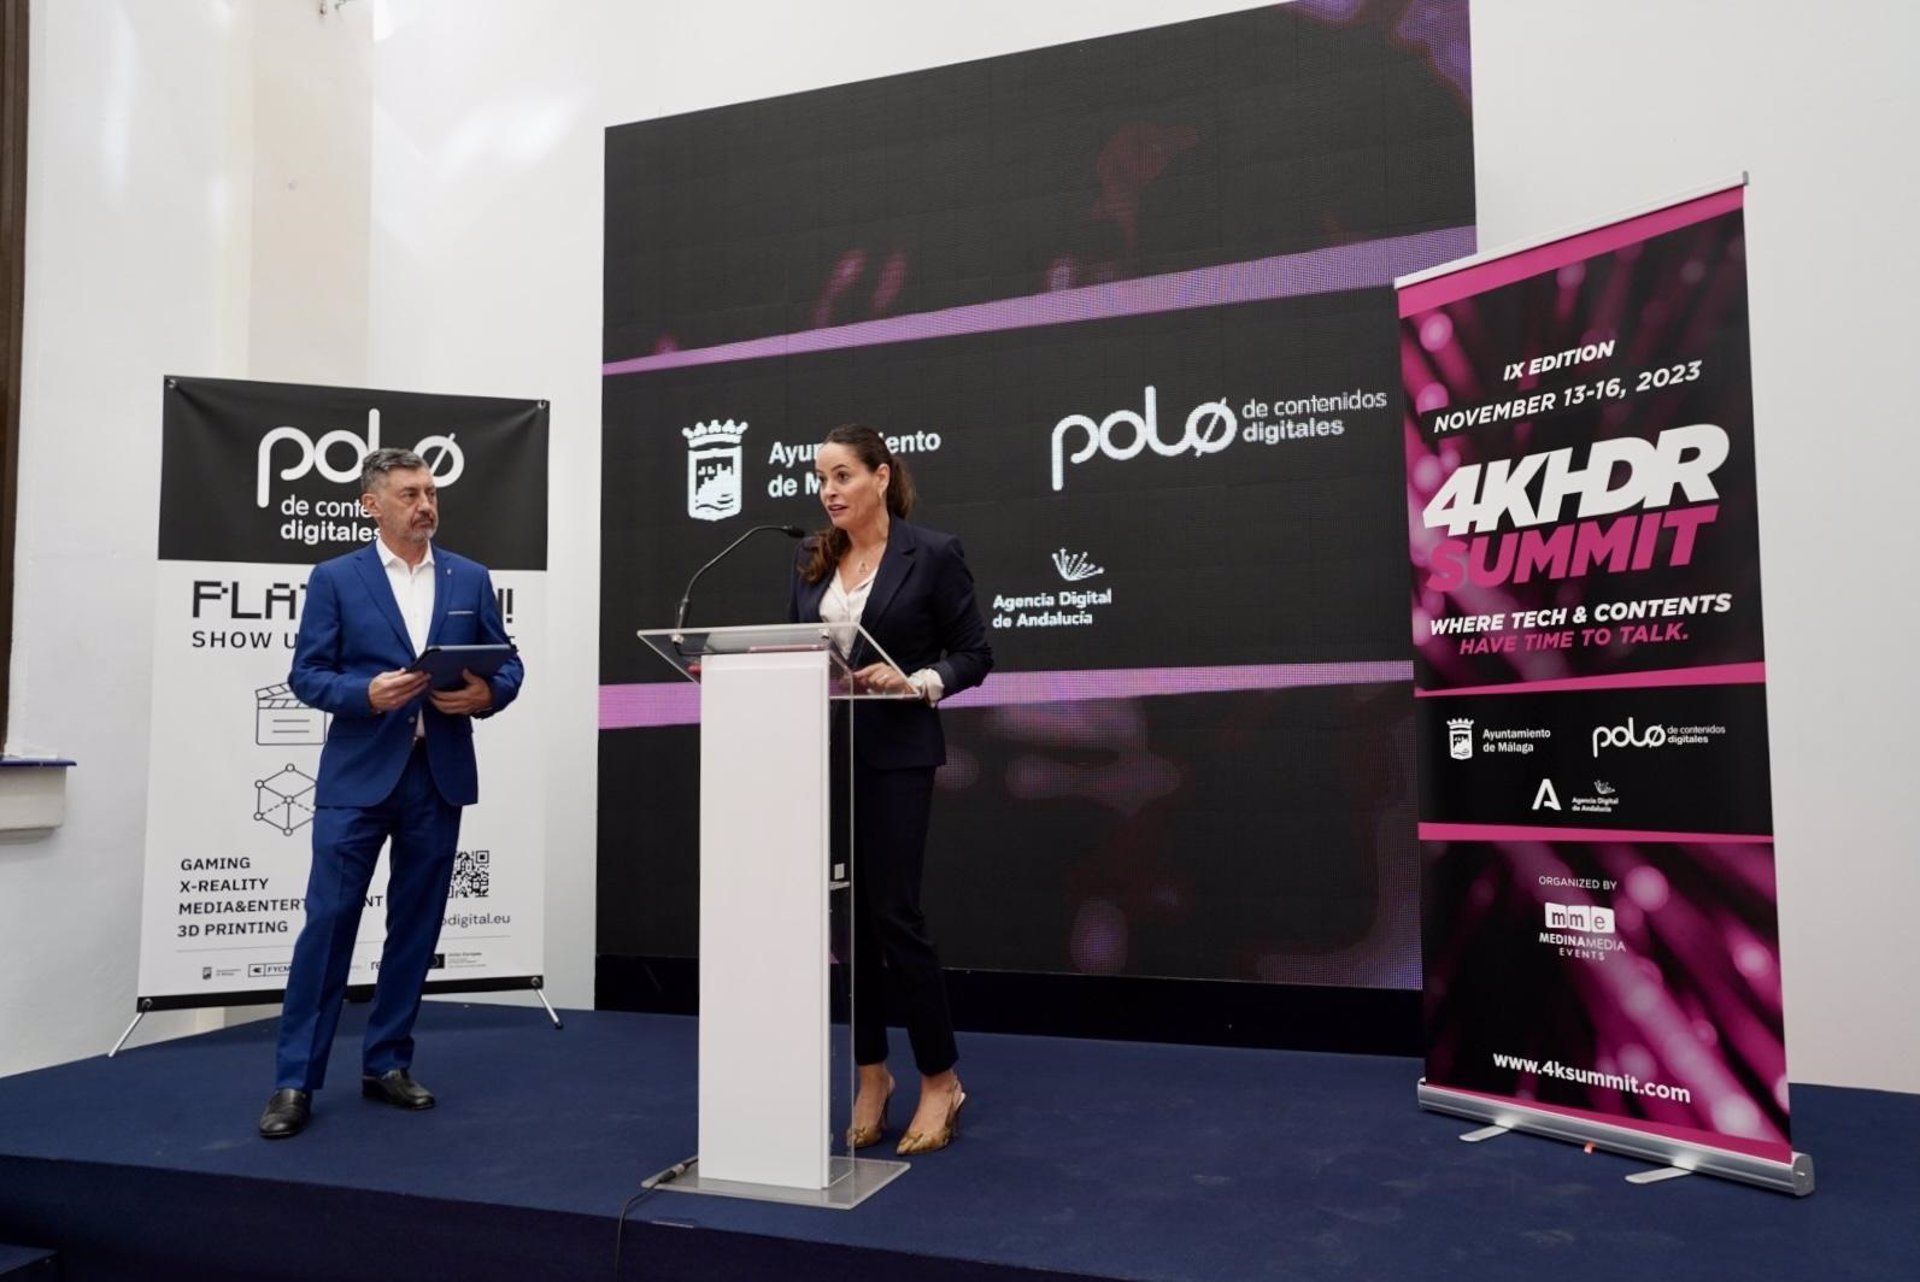 La 4K HDR Summit 2023 tendrá lugar en el Polo Nacional de Contenidos Digitales de Málaga del 13 al 16 noviembre